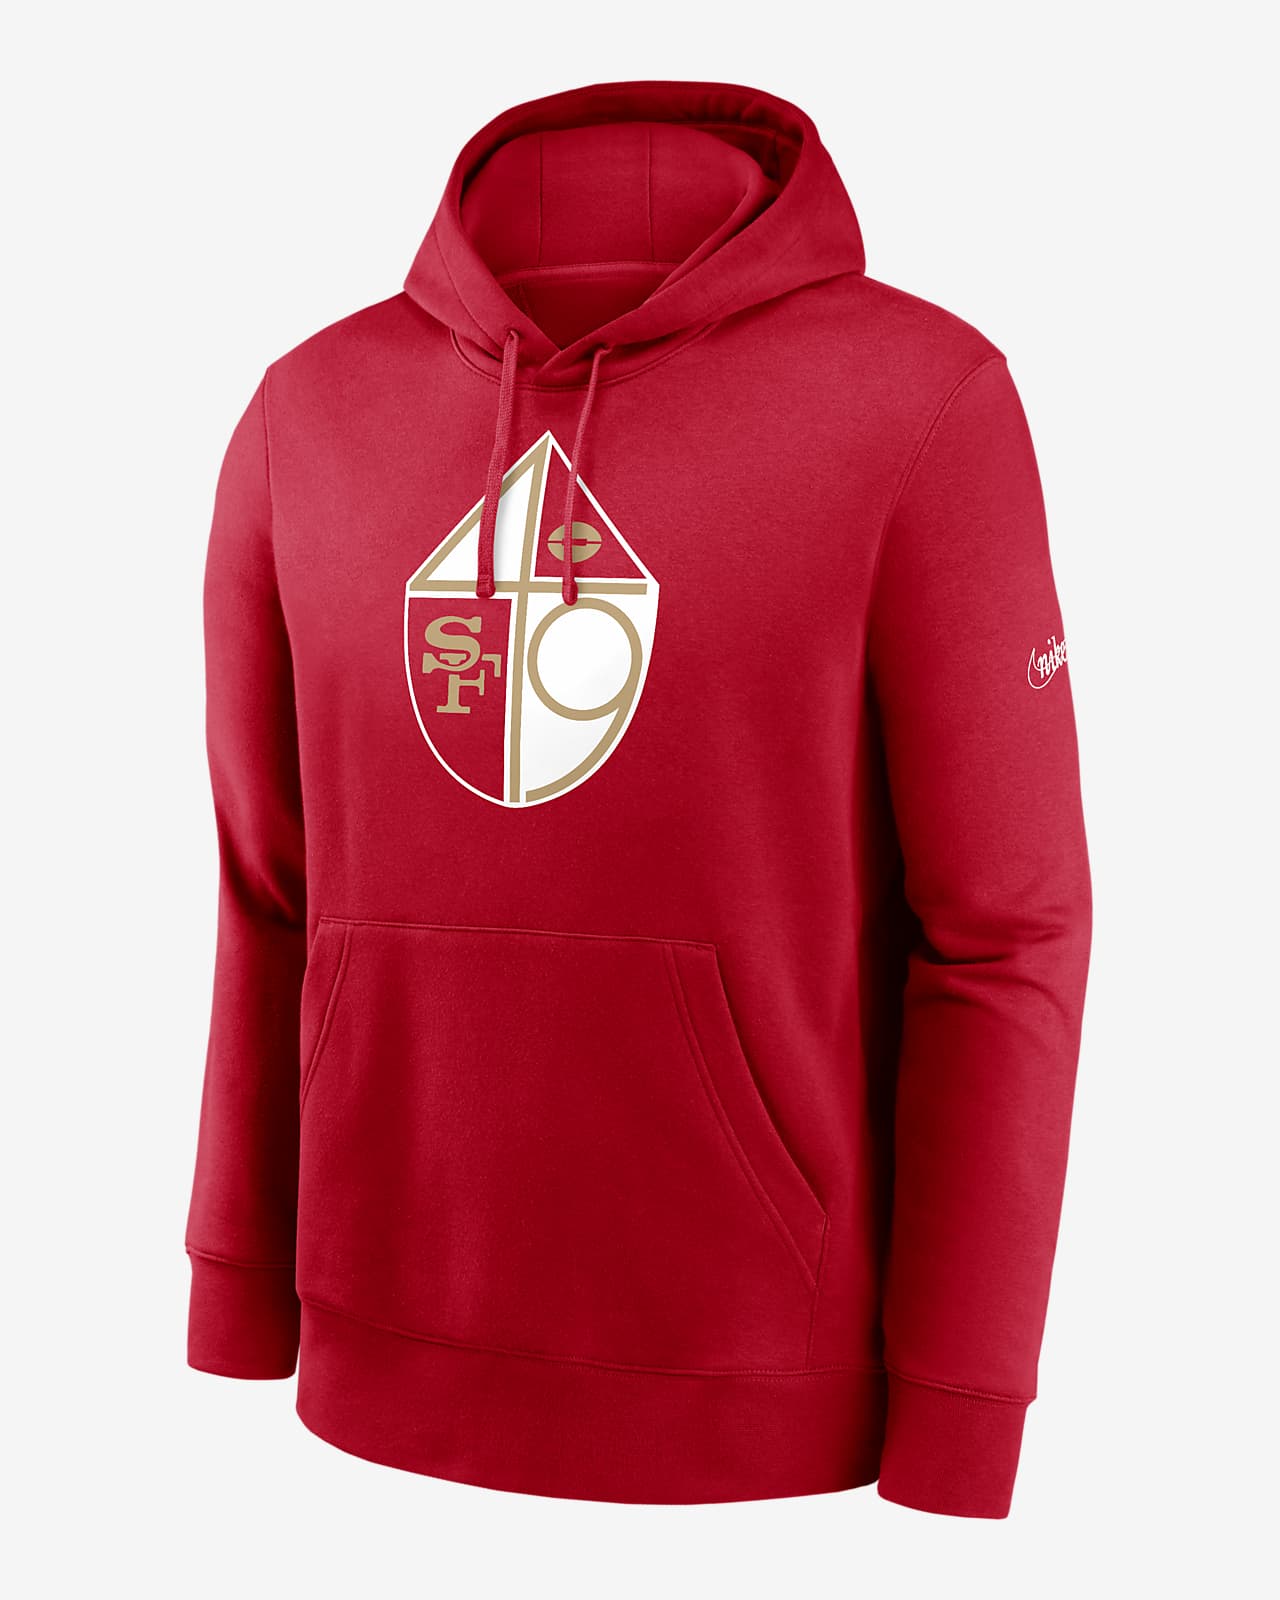 San Francisco 49ers Rewind Club Men’s Nike Men's NFL Pullover Hoodie in Red, Size: Large | NKDK65N73V-8XD